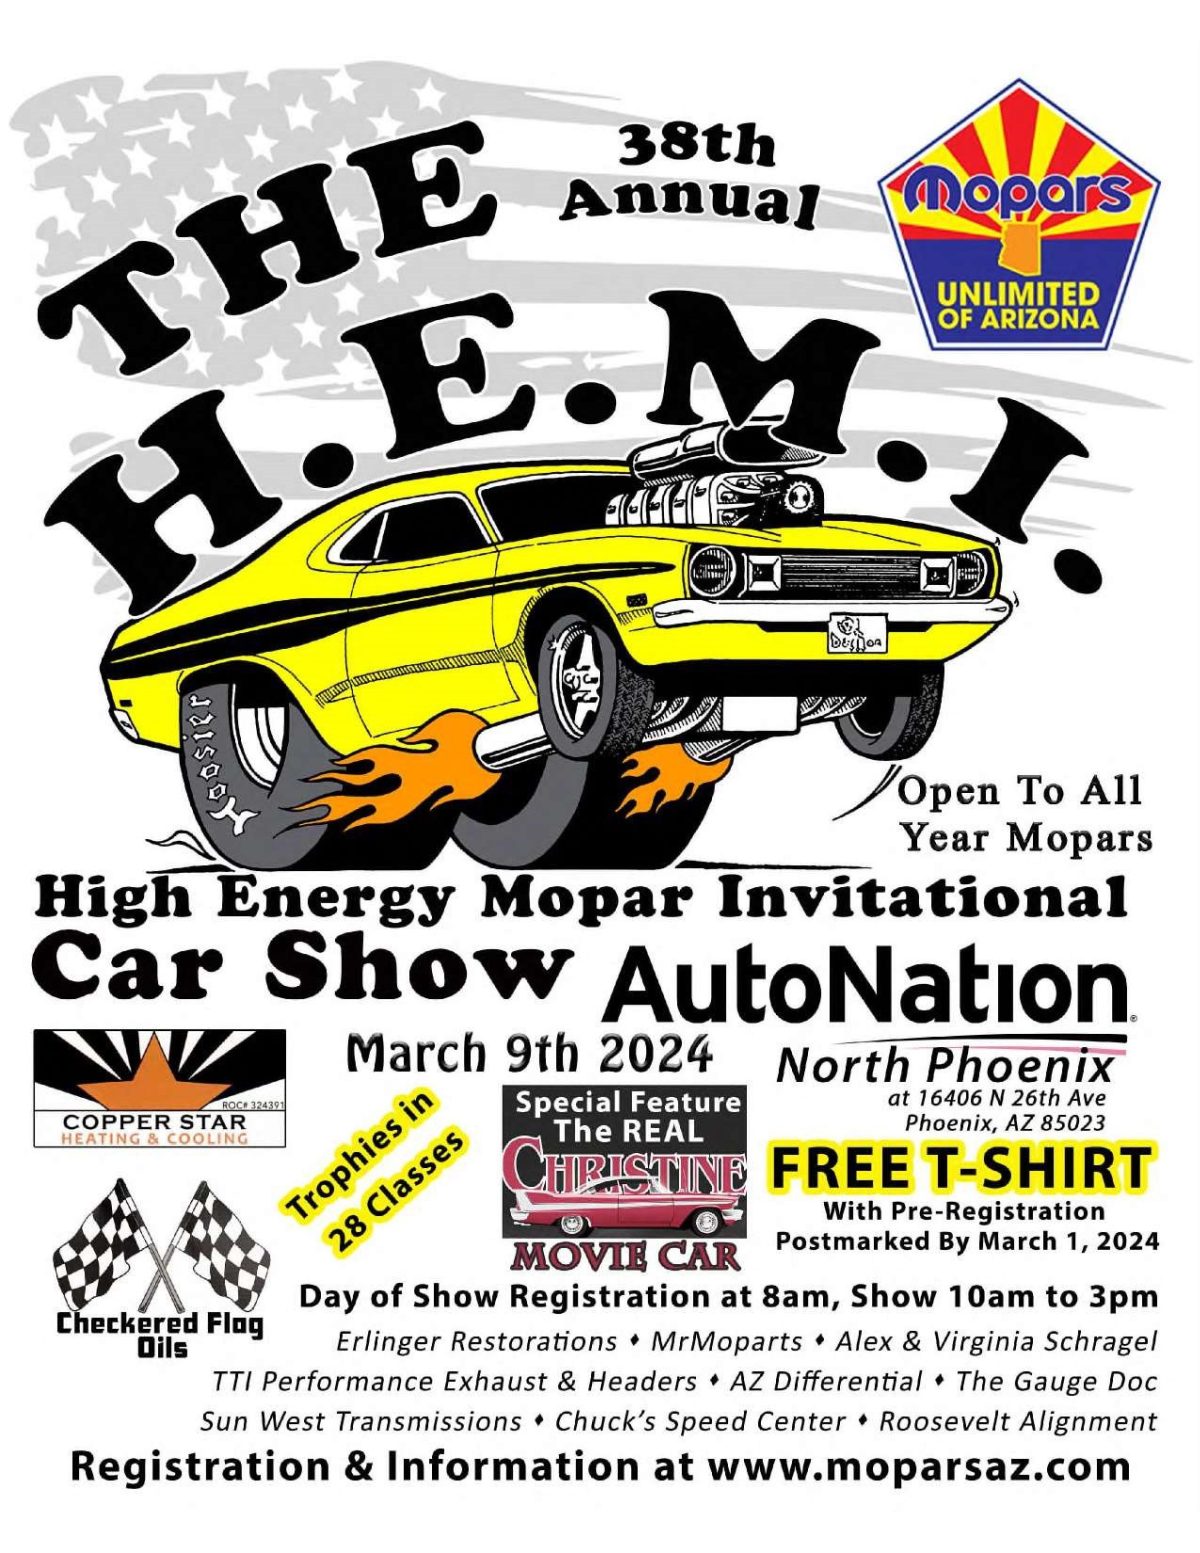 H.E.M.I. High Energy Mopar Invitational Car Show